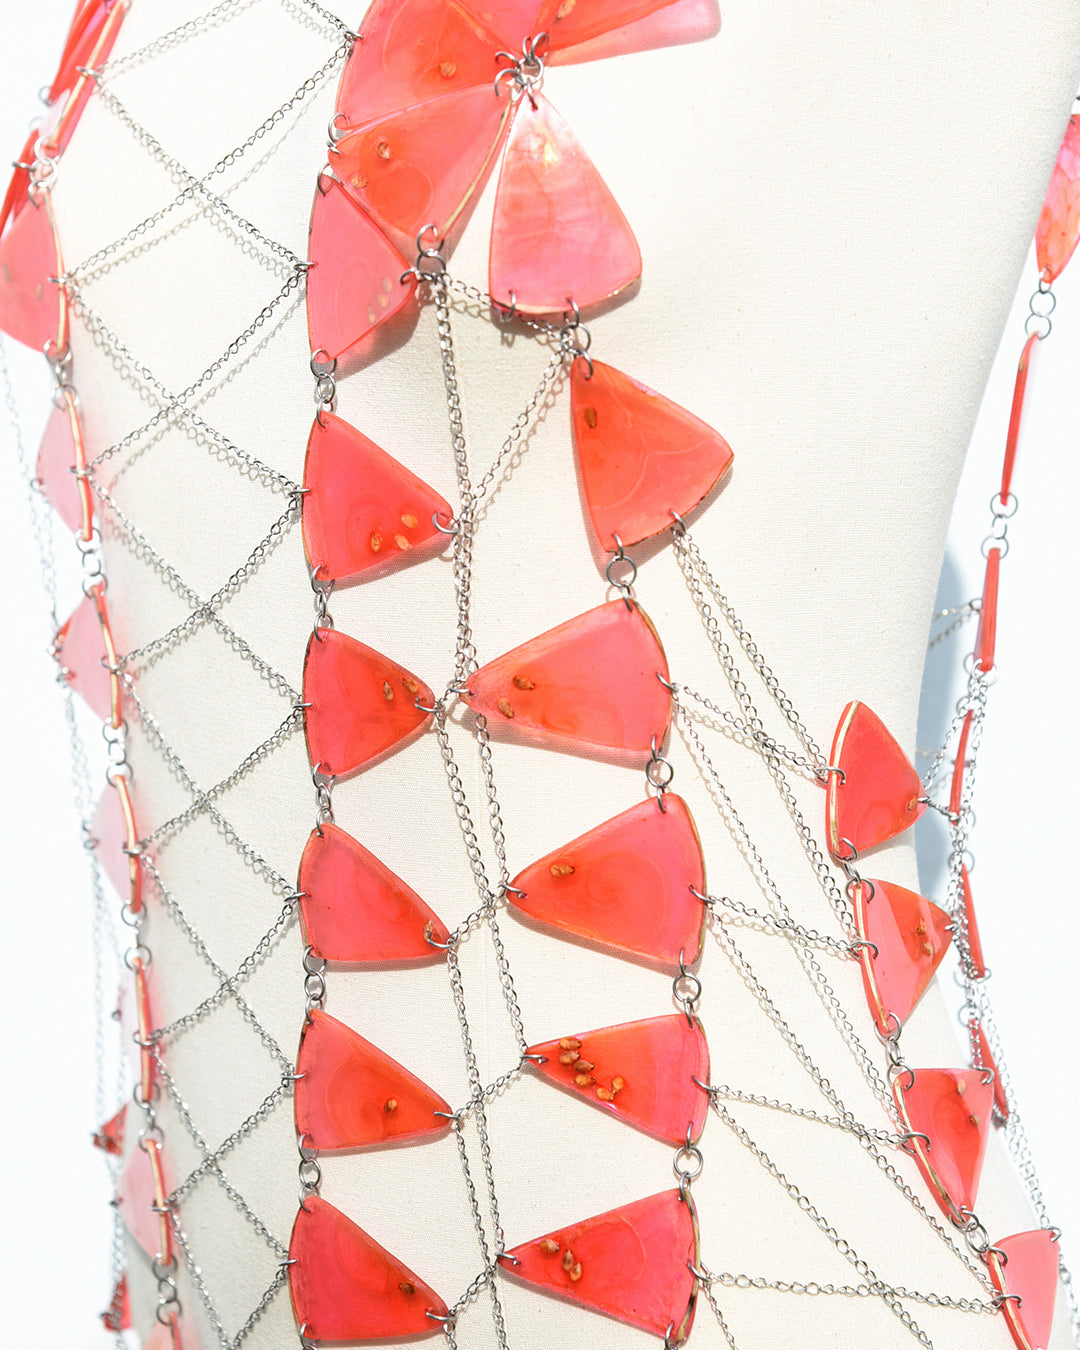 Real watermelon body jewelry designed by Liliana Salazar